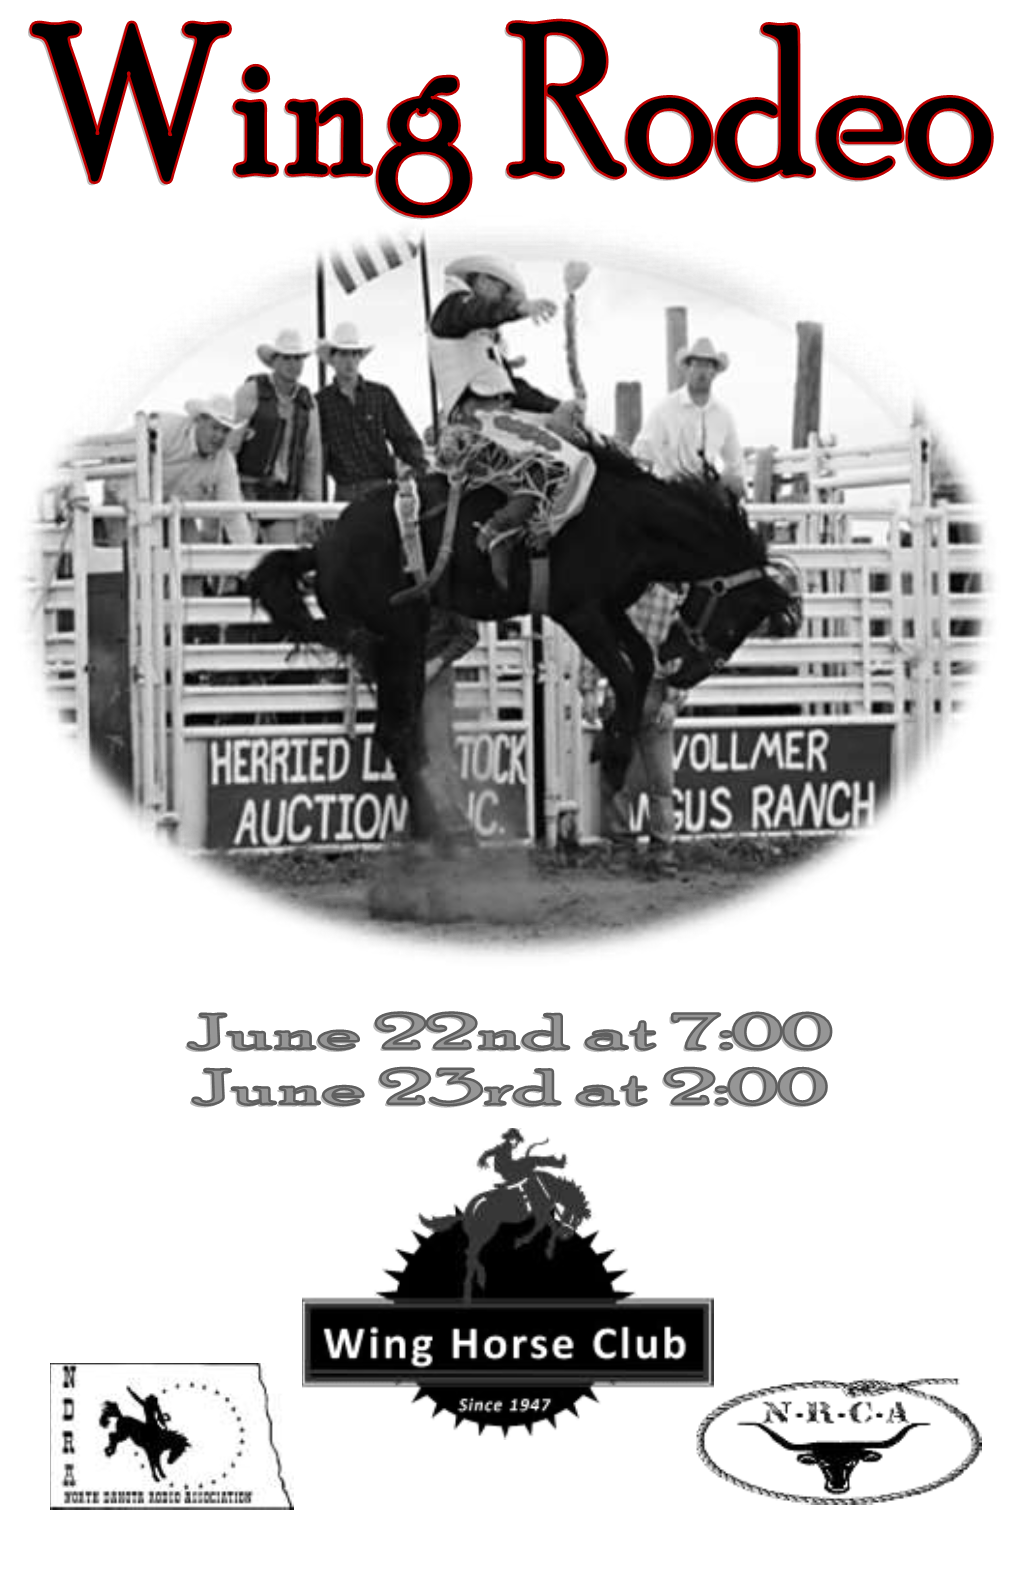 Whc Rodeo Program 2013.Pdf